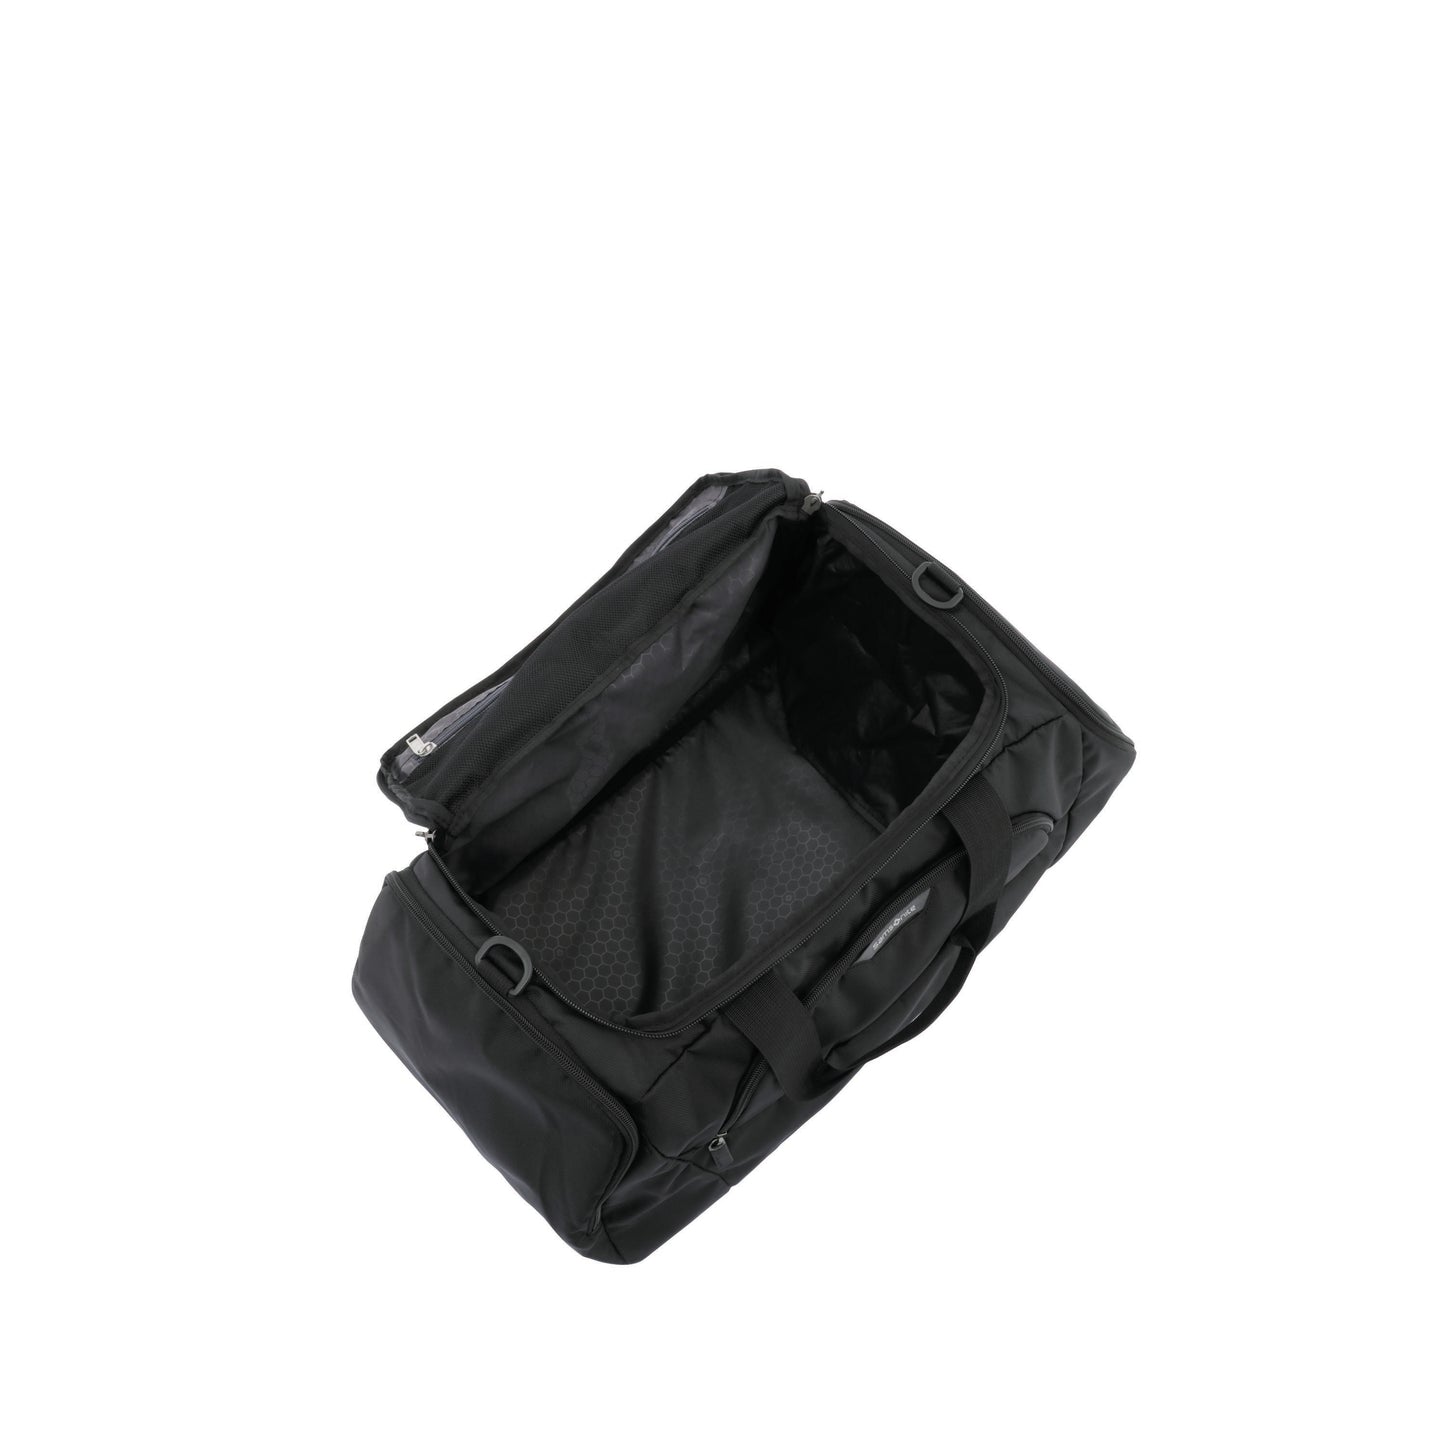 Samsonite - Albi 55cm Small Duffle Bag - Black/Grey - rainbowbags